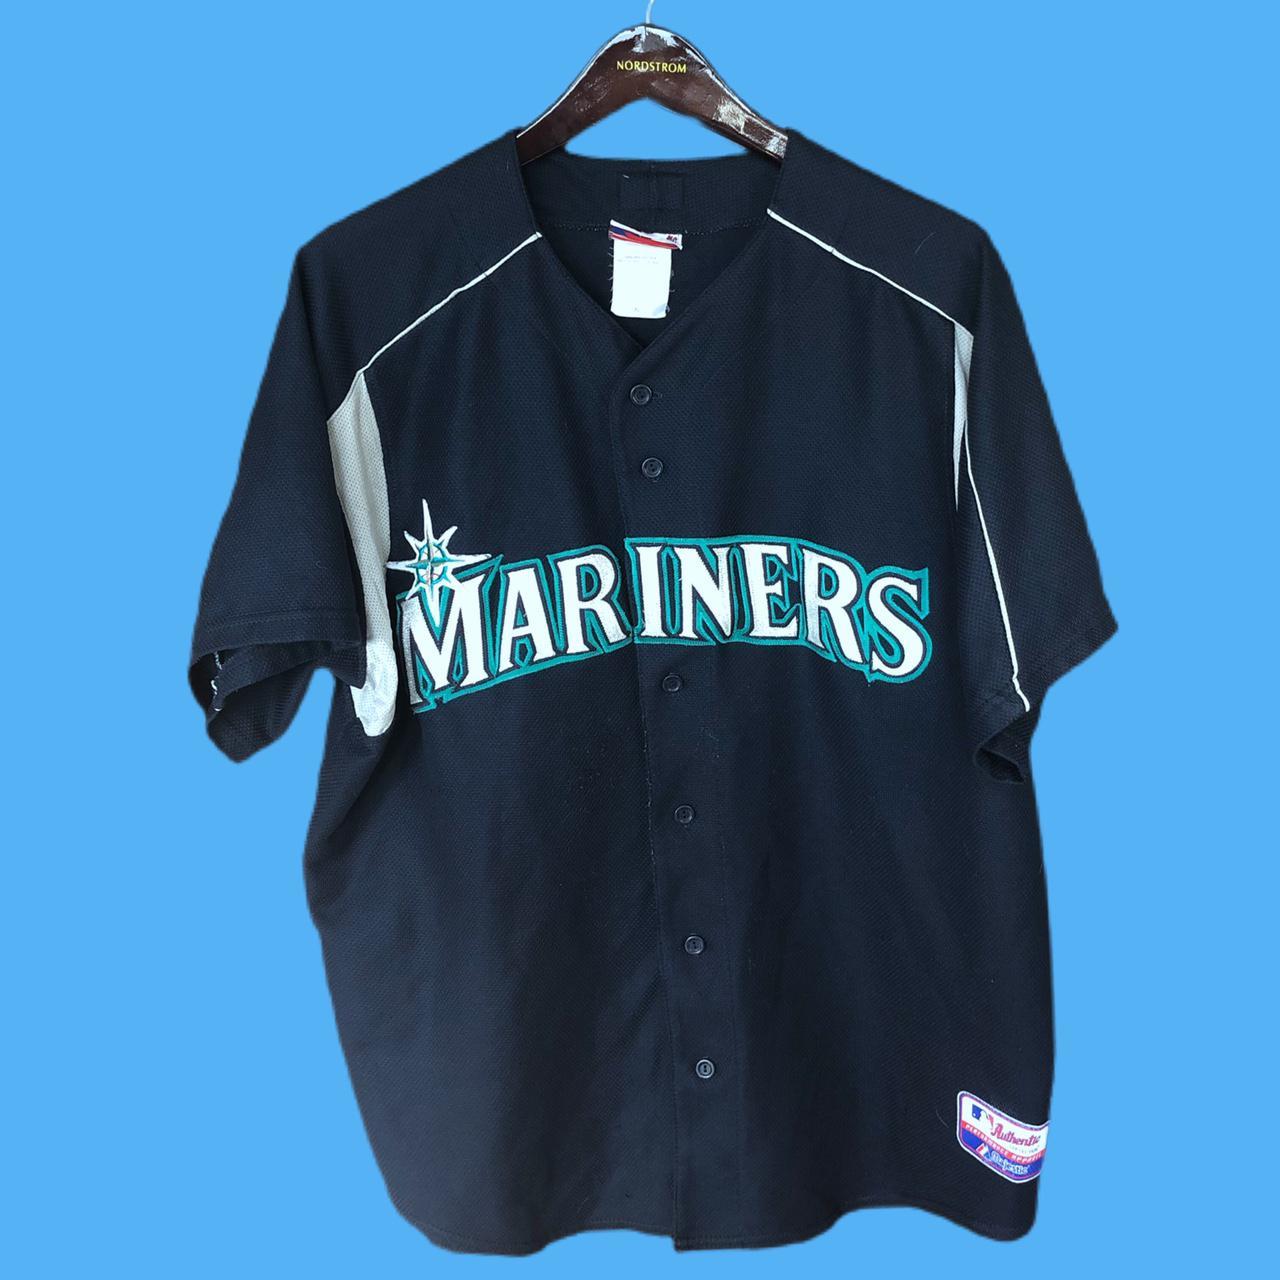 seattle mariners baseball jersey